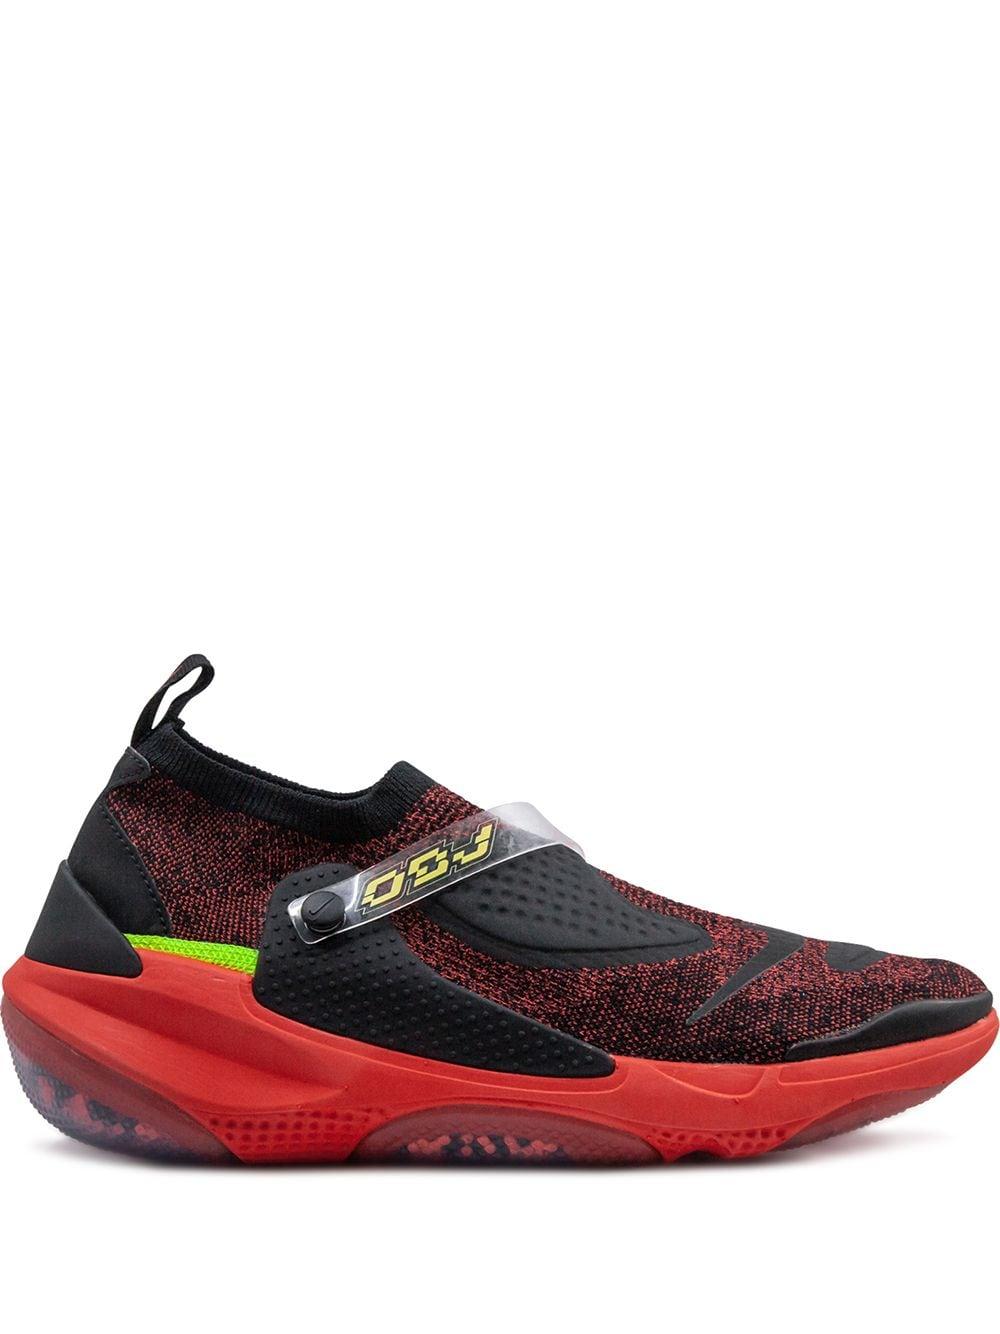 Nike Synthetic Joyride Flyknit Cc3 Obj Shoe in Black for Men - Lyst